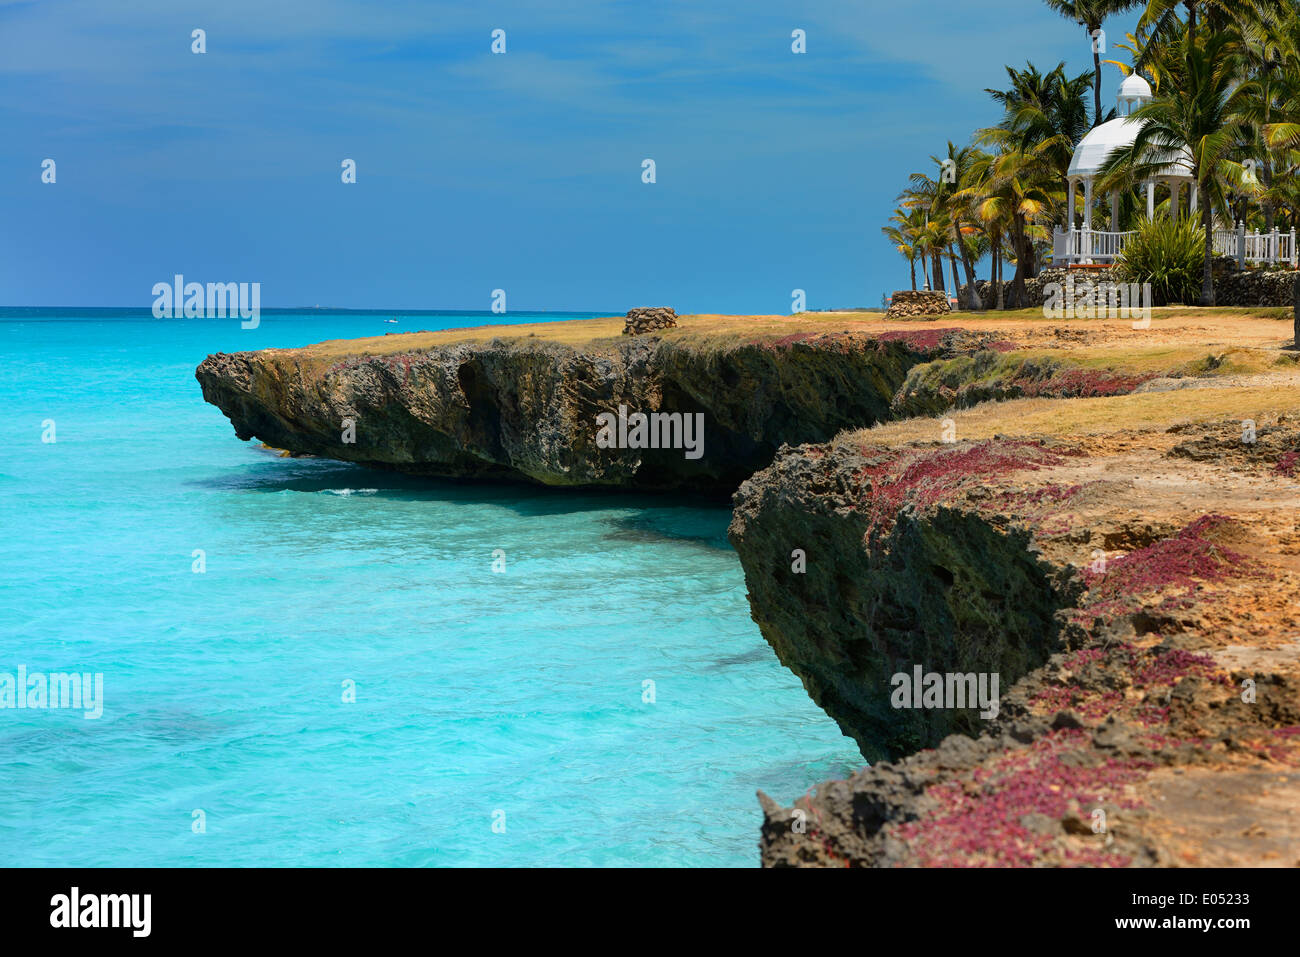 Roccia lavica shore con foro di sfiato pozzetti palme e gazebo a Varadero cuba resort con oceano turchese Foto Stock